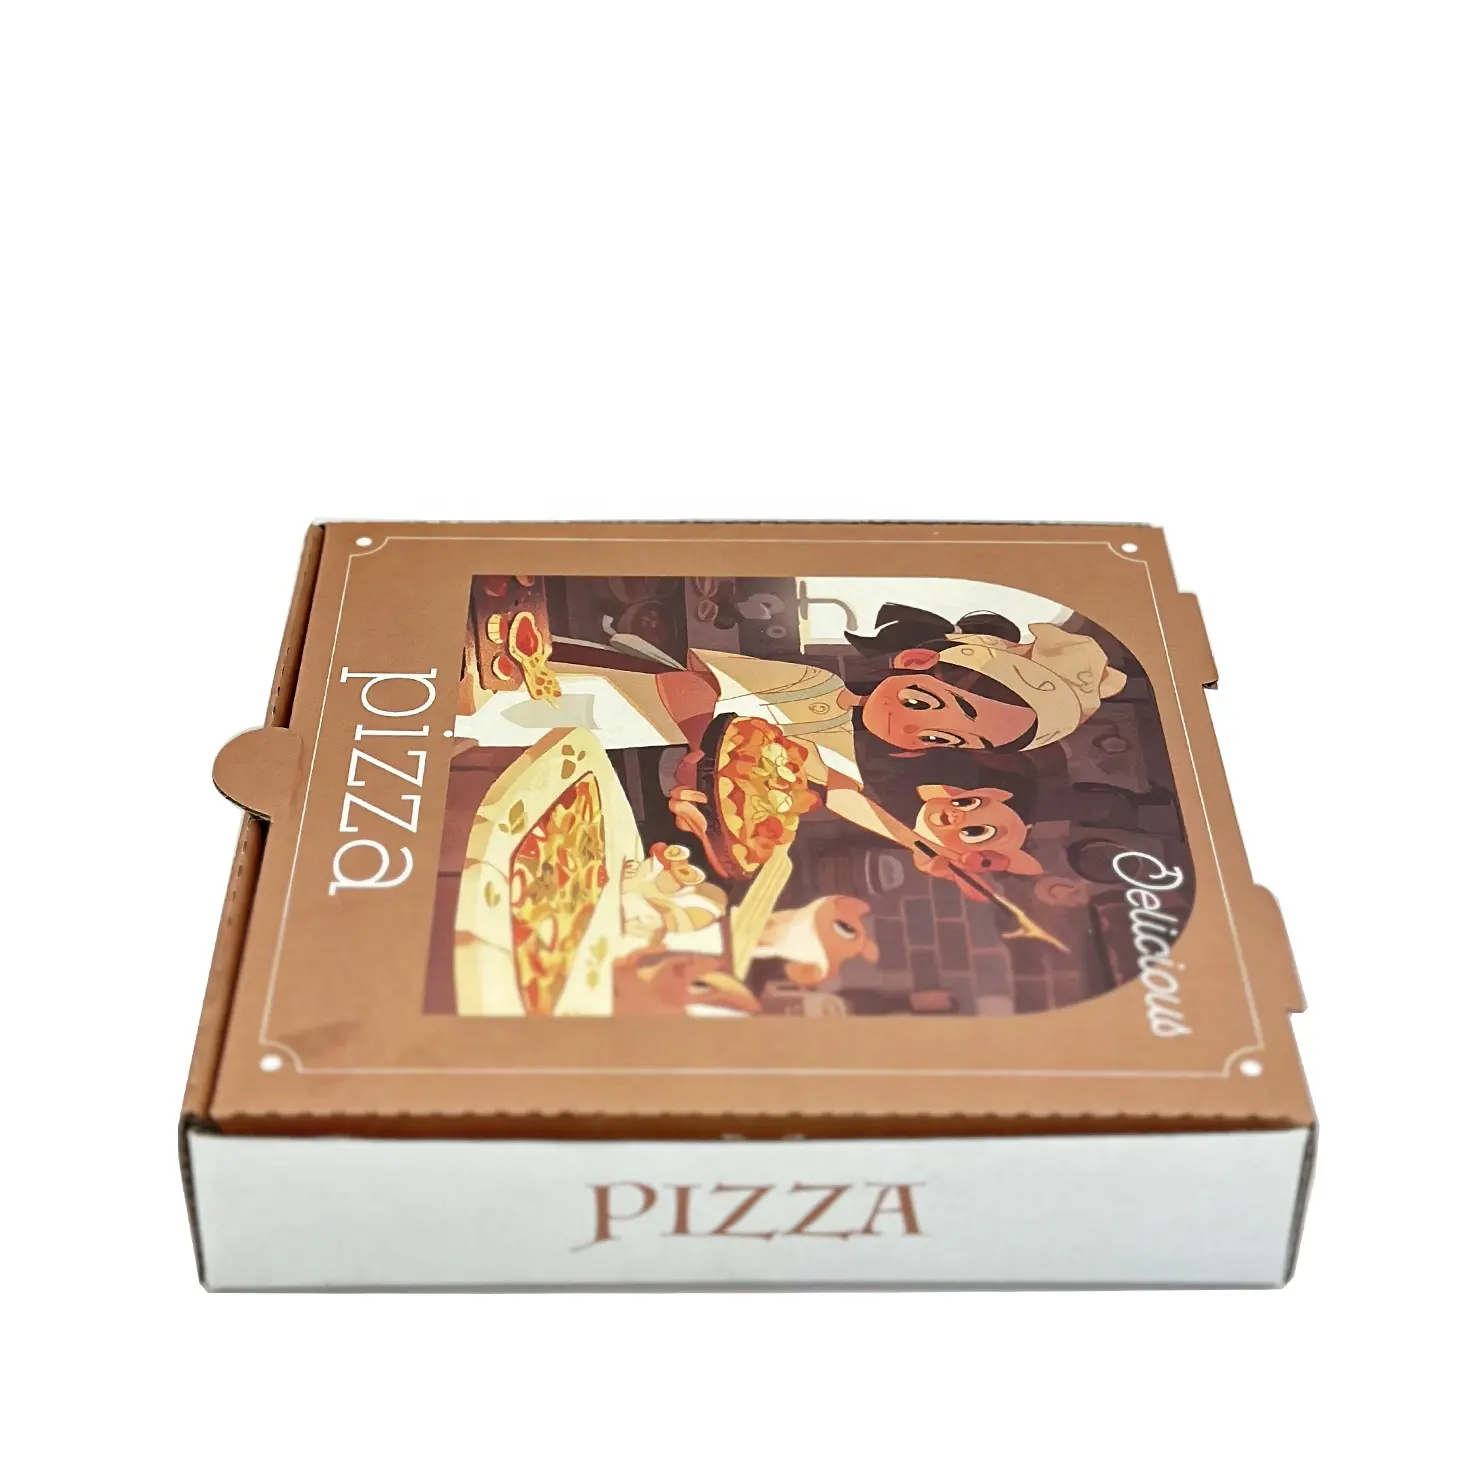 피자 상자 도매 20 19 18 17 16 15 14 13 12 11 10 9 8 7 6 인치 맞춤형 피자 상자